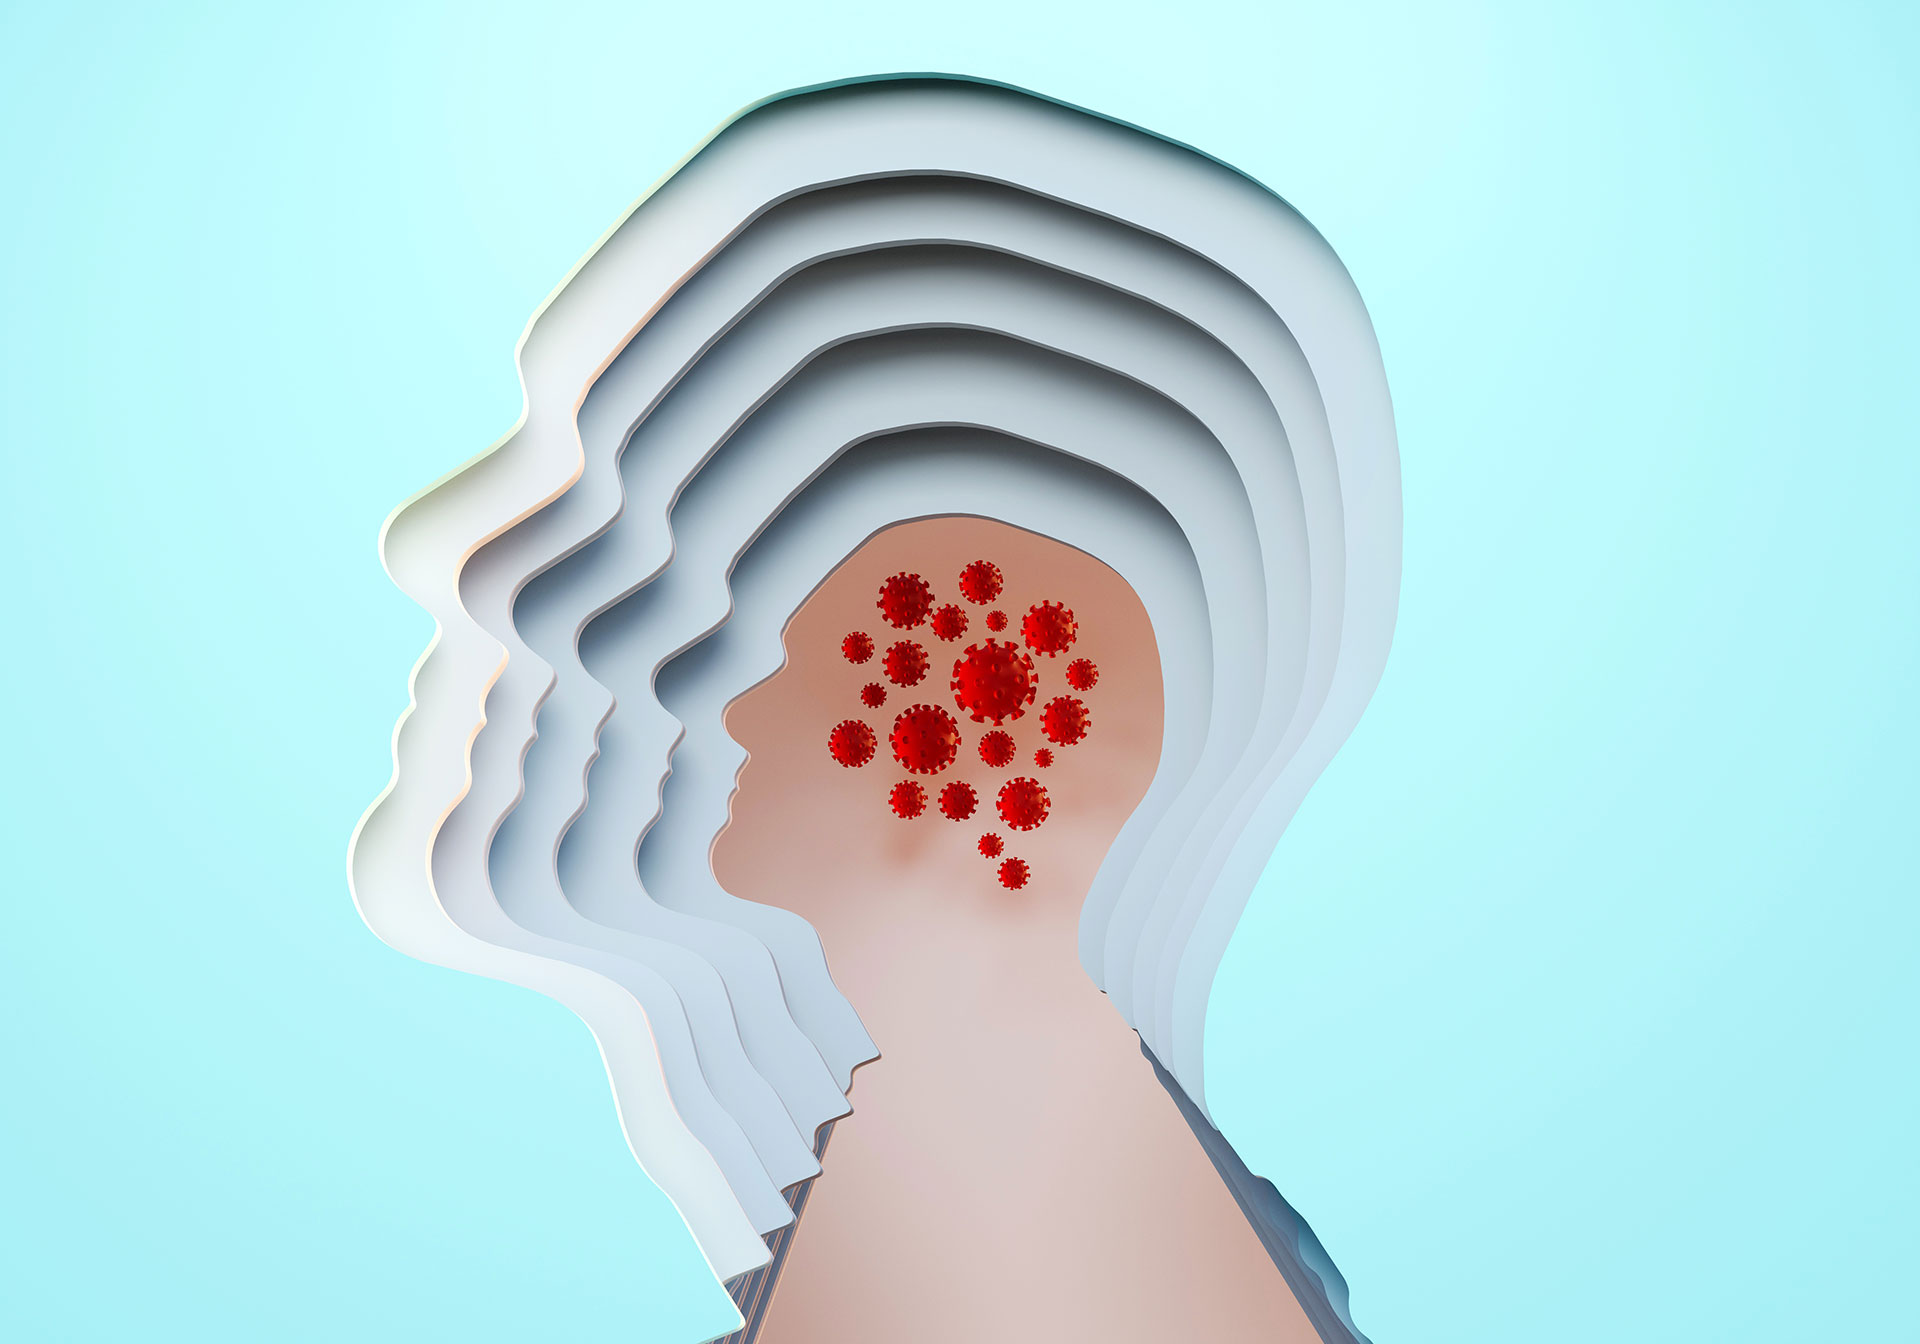 Nueva evidencia sugiere que el ataque del coronavirus al cerebro podría tener múltiples frentes: podría atacar a ciertas células cerebrales directamente, reducir el flujo sanguíneo al tejido cerebral o desencadenar la producción de moléculas inmunes que pueden dañar las células cerebrales (Getty Images)